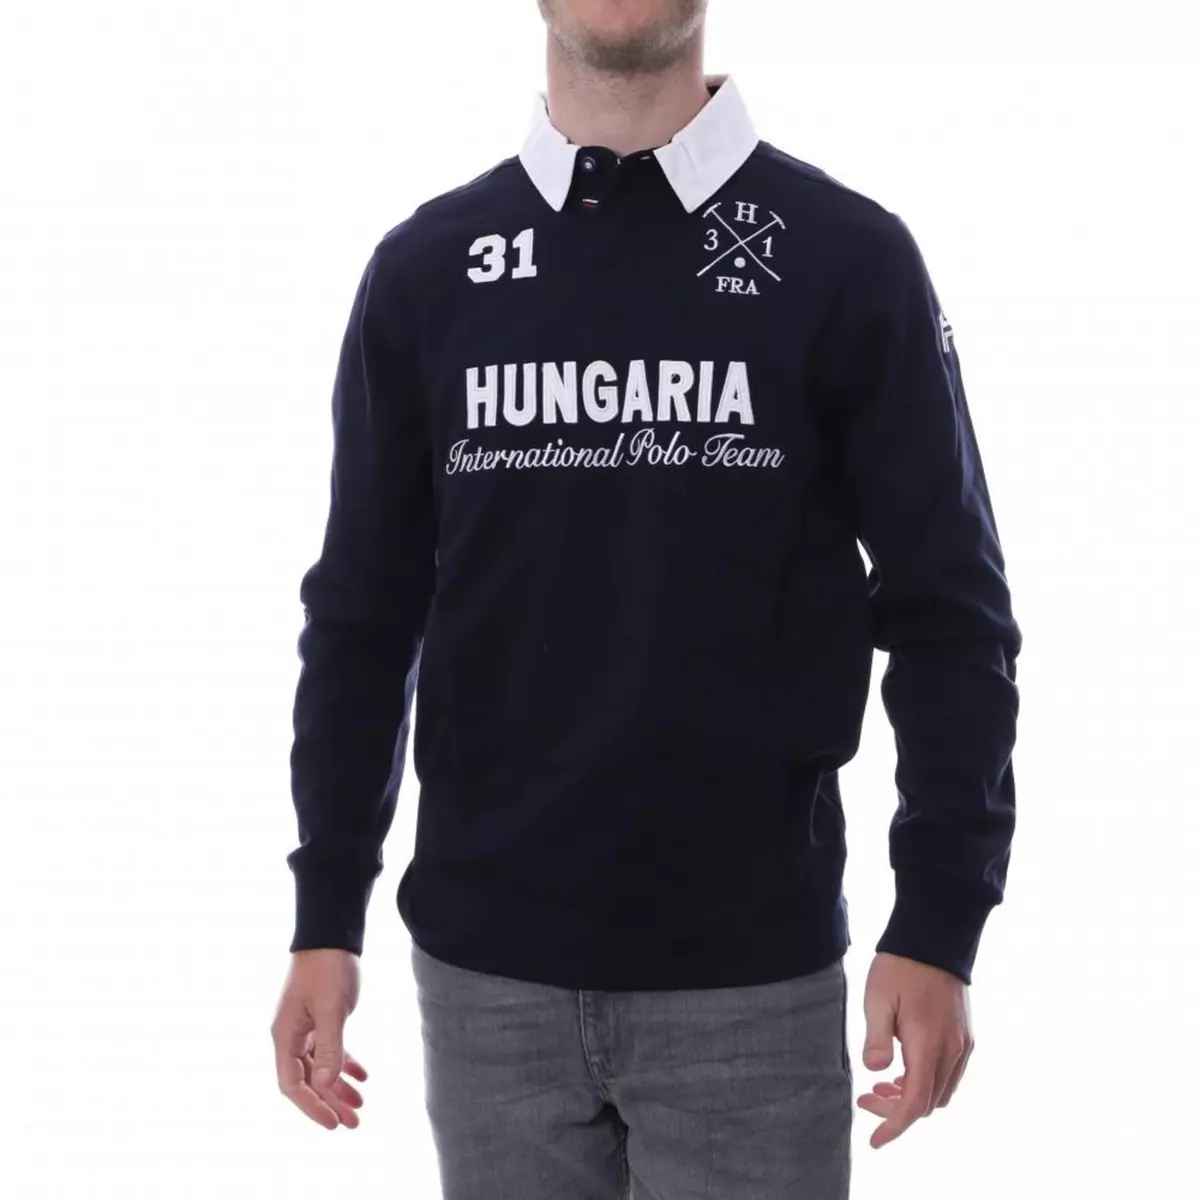 HUNGARIA Polo marine homme Hungaria International Polo Team